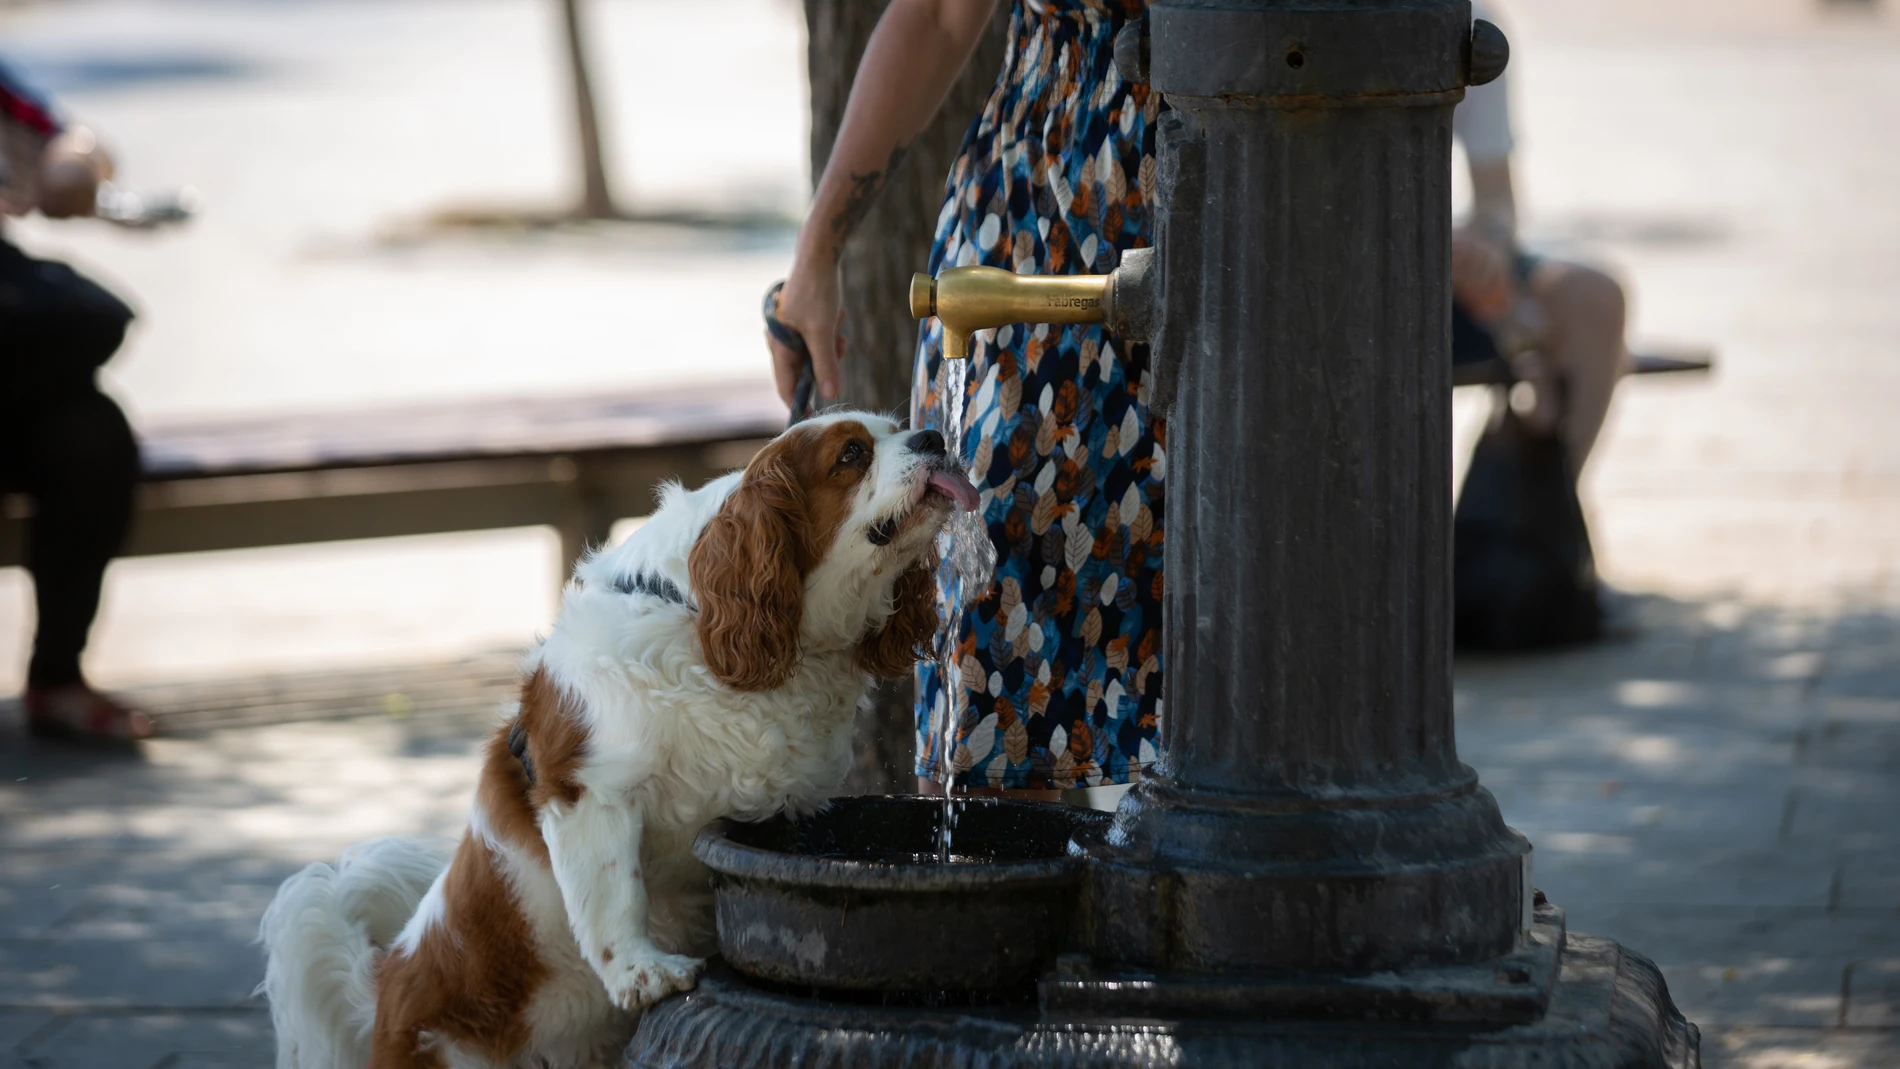 Un perro bebiendo de una fuente de Barcelona